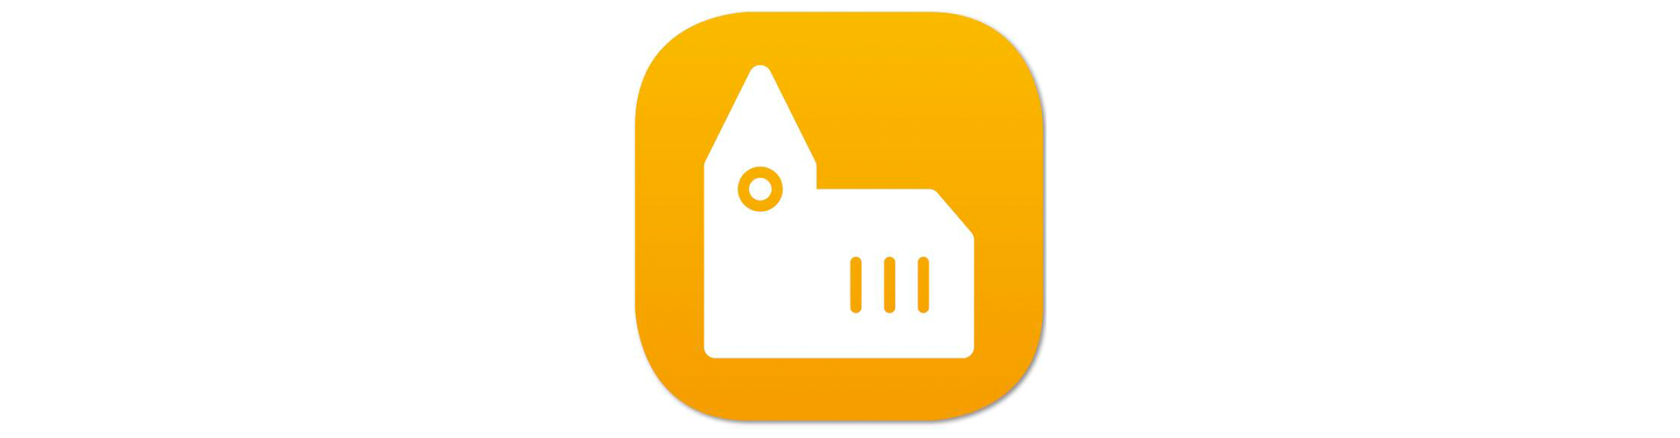 Ikonen till applikationen Kyrkguiden är gul med en vit kyrka.